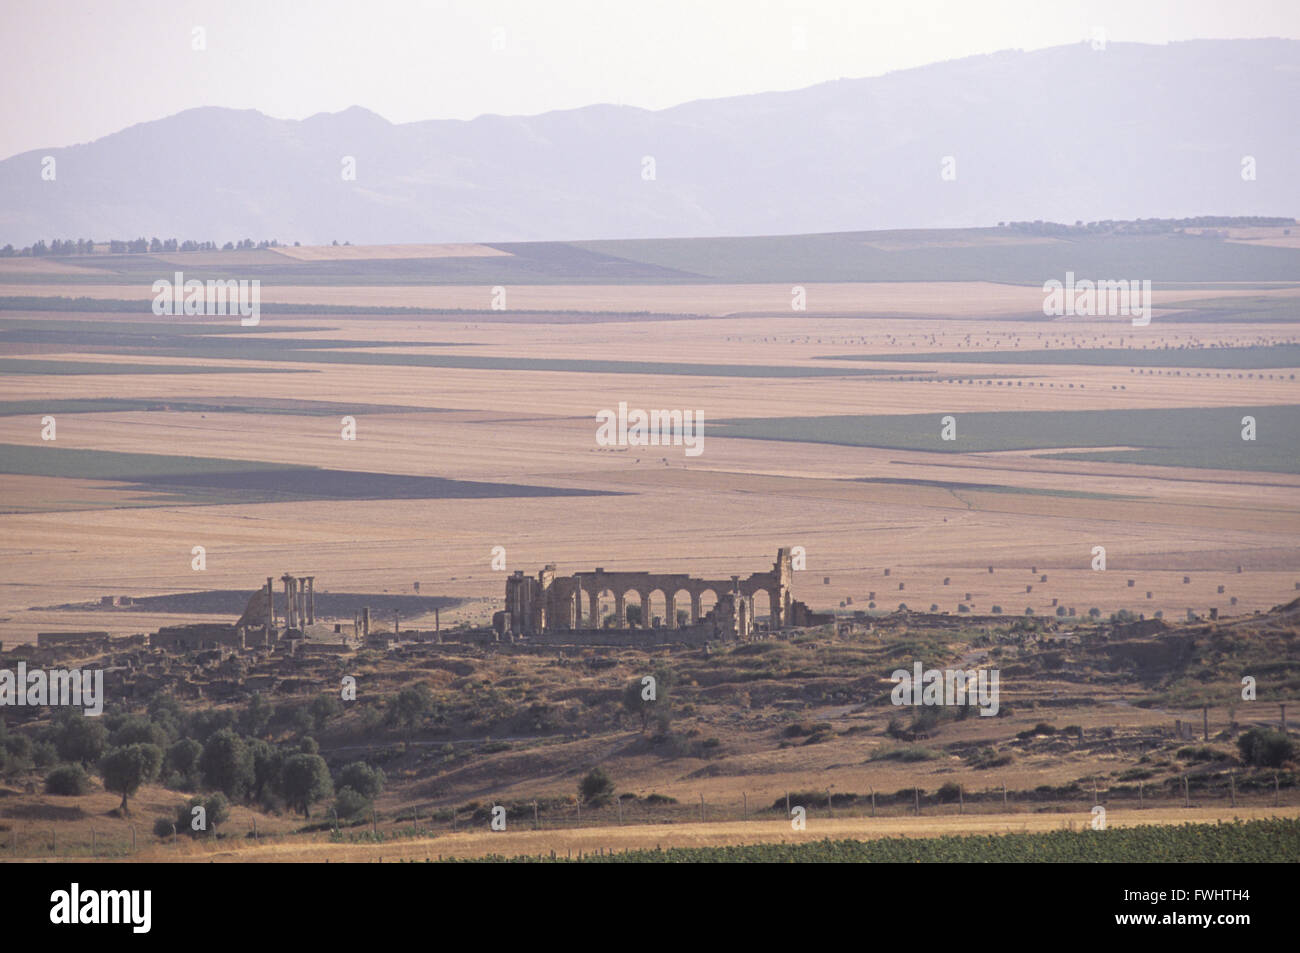 Volubillis est une ancienne ville romaine au Maroc. Considéré comme l'ancienne capitale de la Mauritanie. Situé près de la ville de Meknès. Banque D'Images